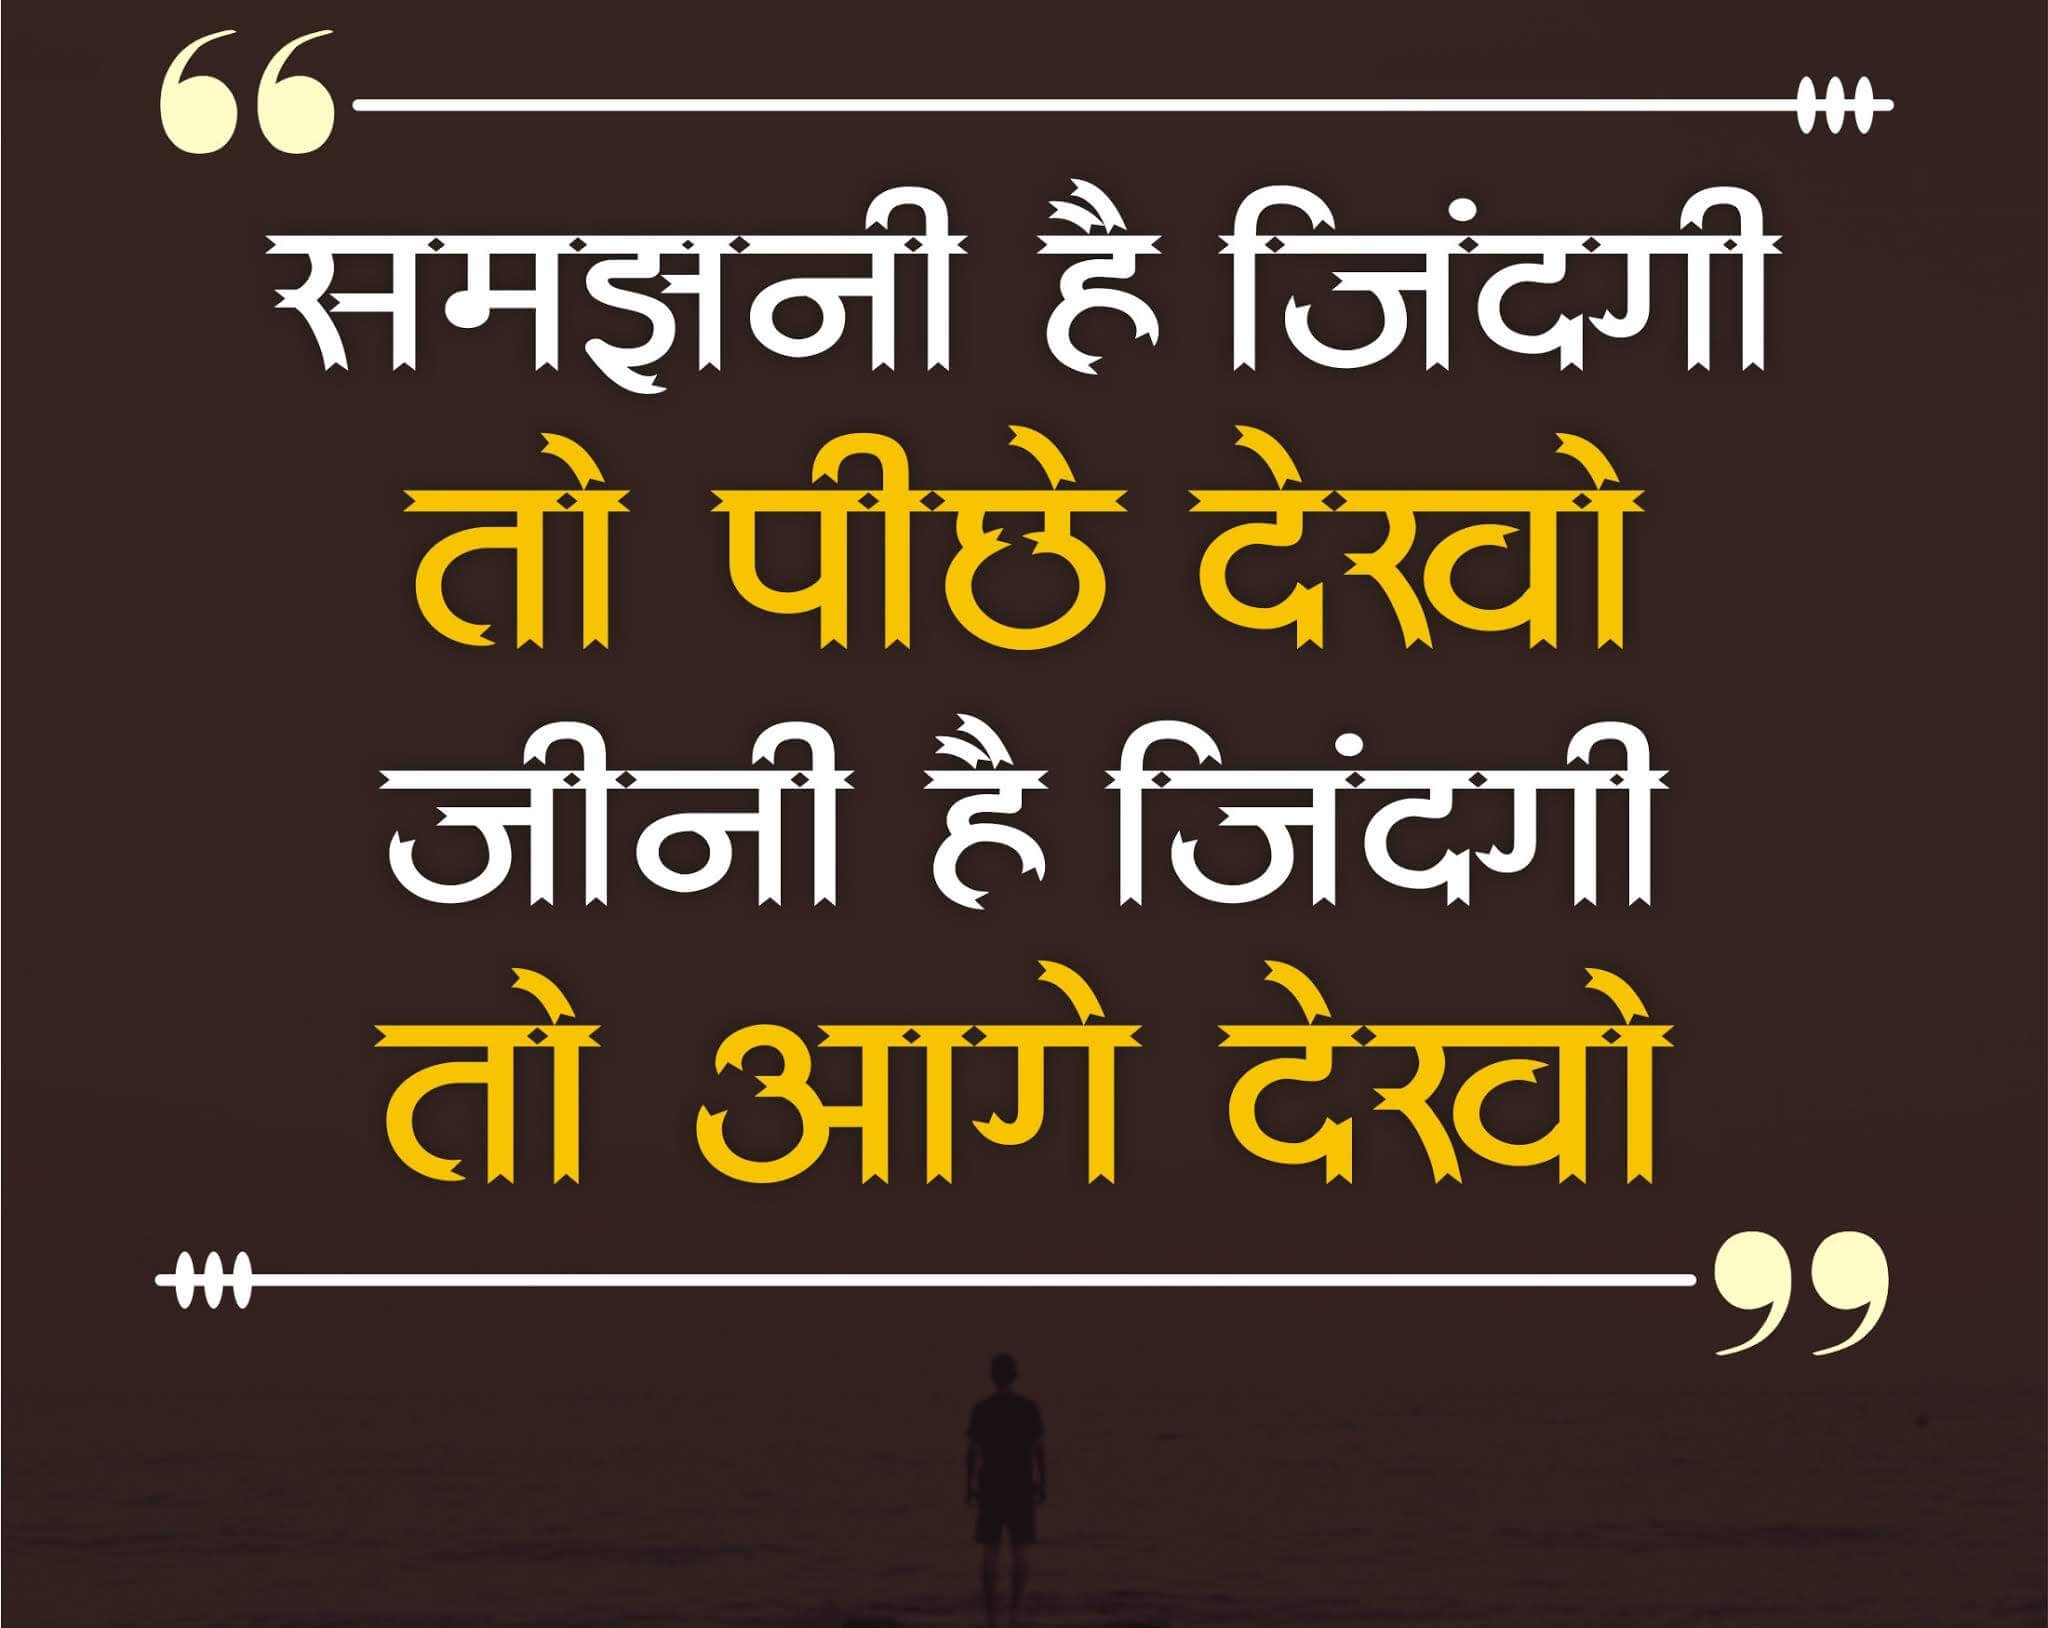 Hindi Motivational Life Quotes 